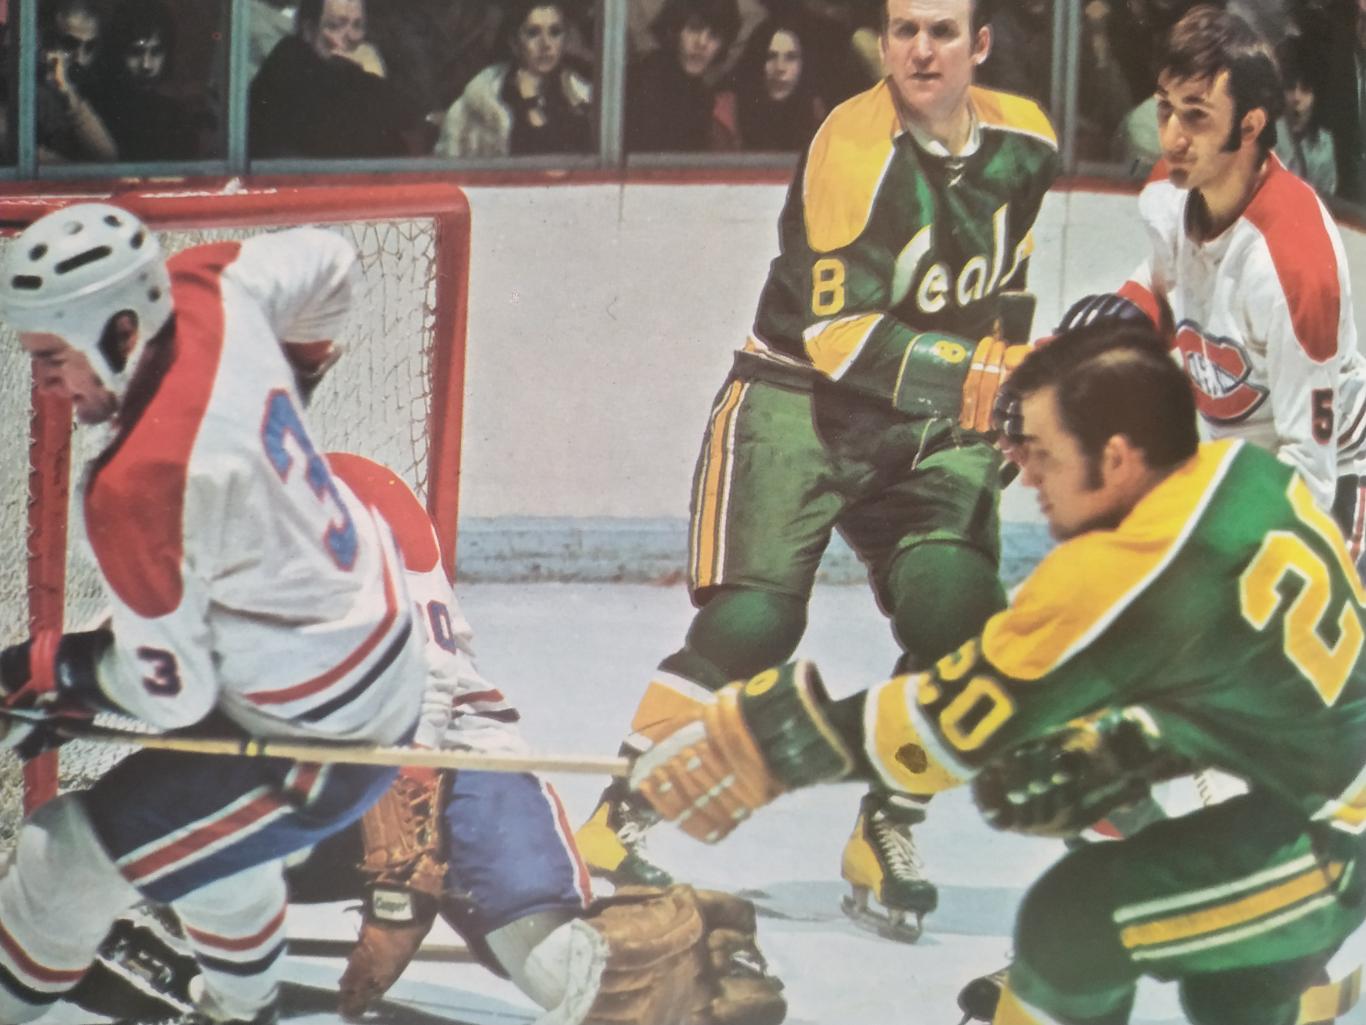 ХОККЕЙ ПРОГРАММА АЛЬБОМ КАЛИФОРНИЯ НХЛ NHL 1971 NOV.16 CALIFORNIA PROGRAM 2